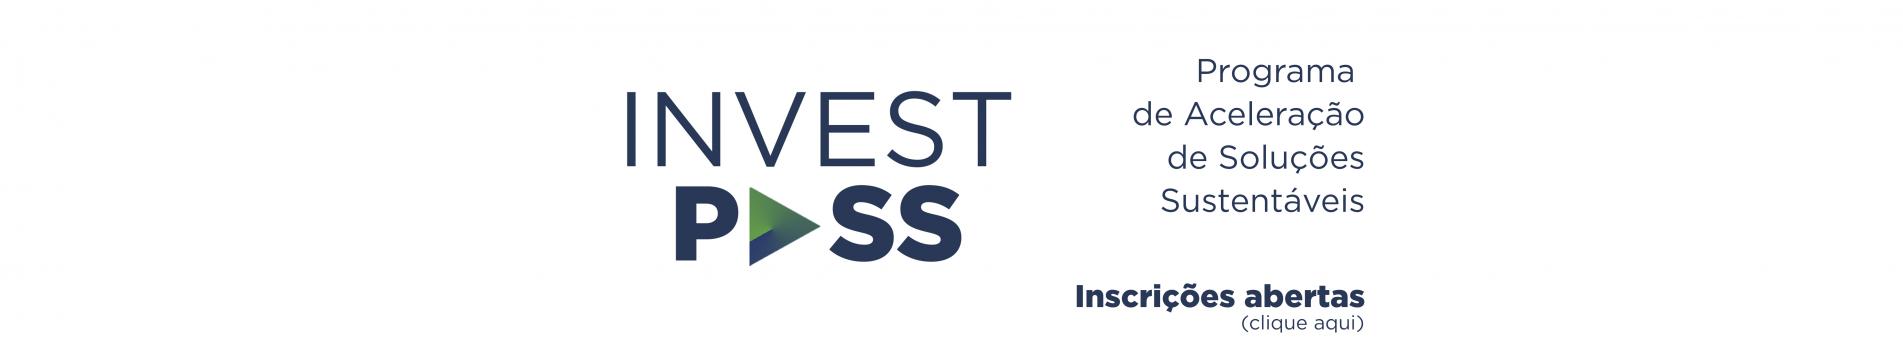 Banner do Programa Invest Pass. Texto: programa de aceleração de soluções sustentáveis. Inscrições abertas, clique aqui. 